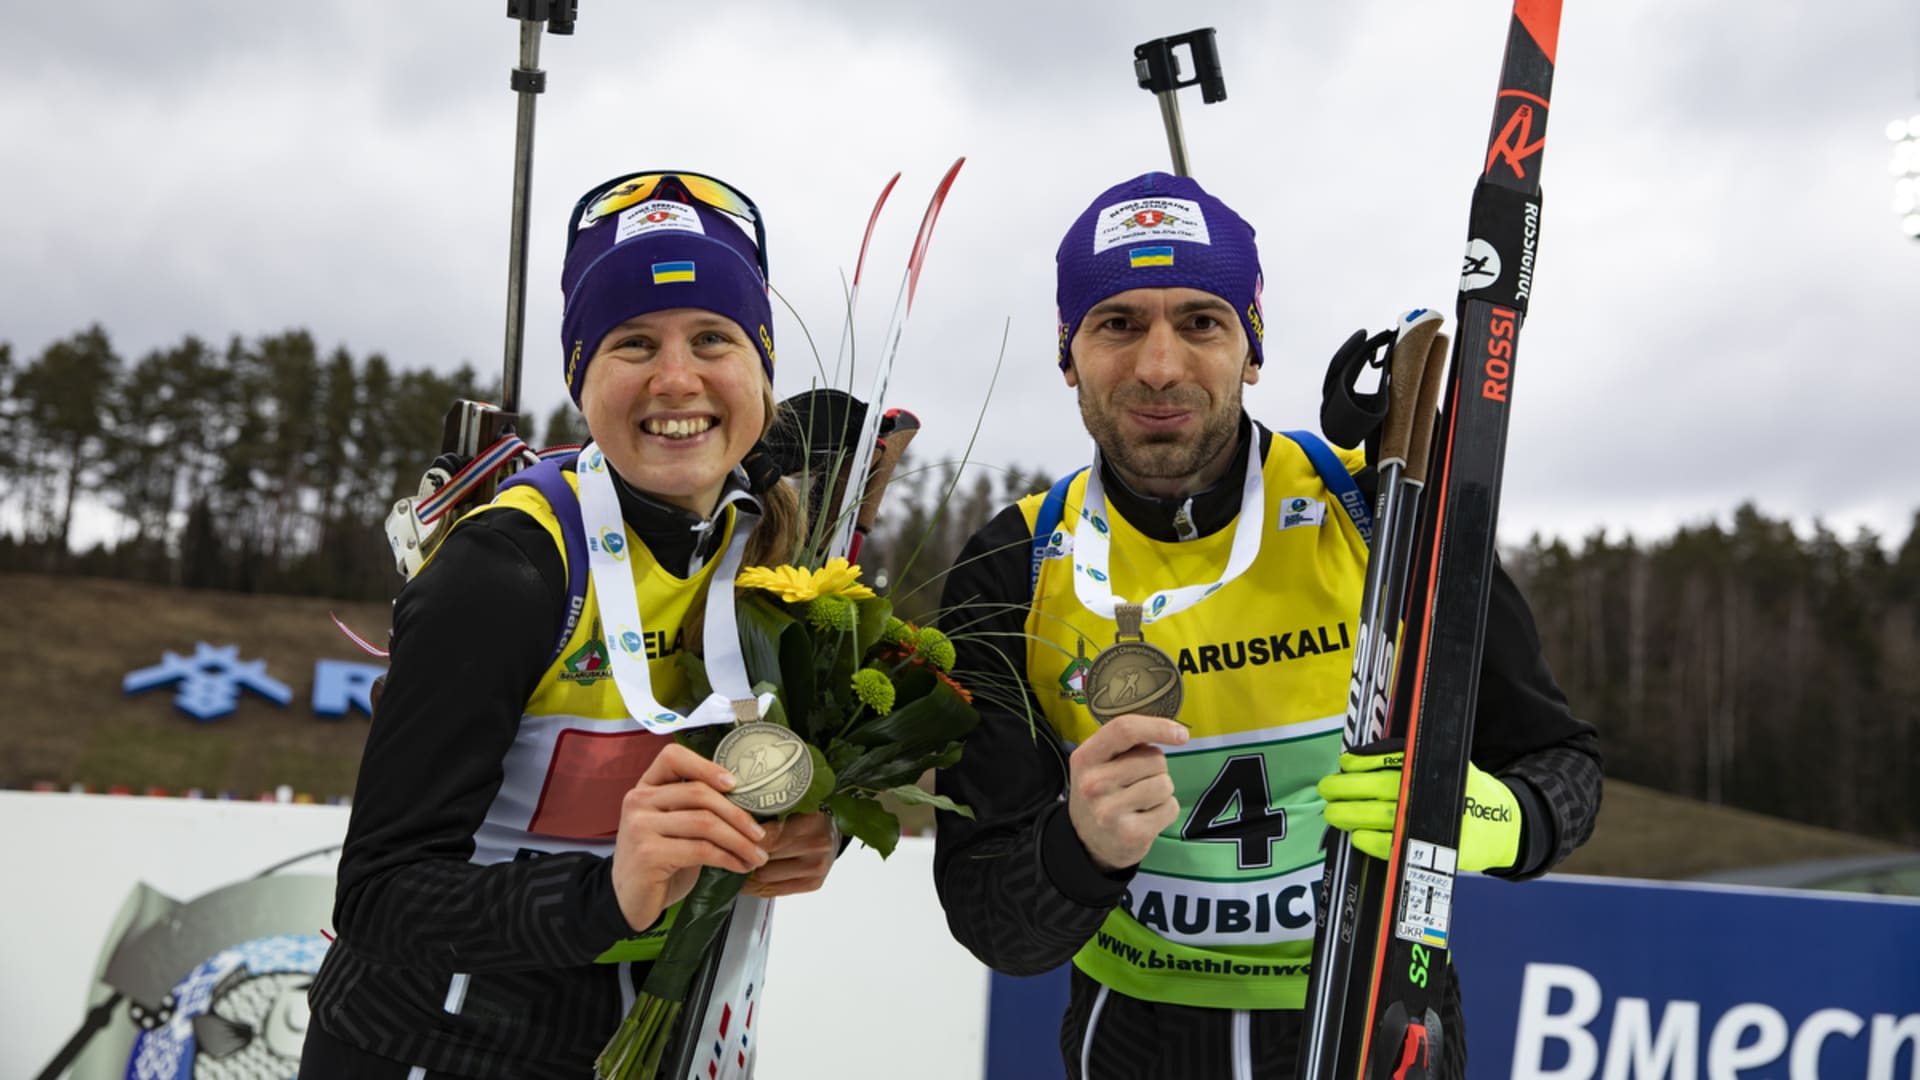 Биатлонисты Анастасия Меркушина и Руслан Ткаленко заняли 3-е место на чемпионате Европы в одиночной смешанной эстафете